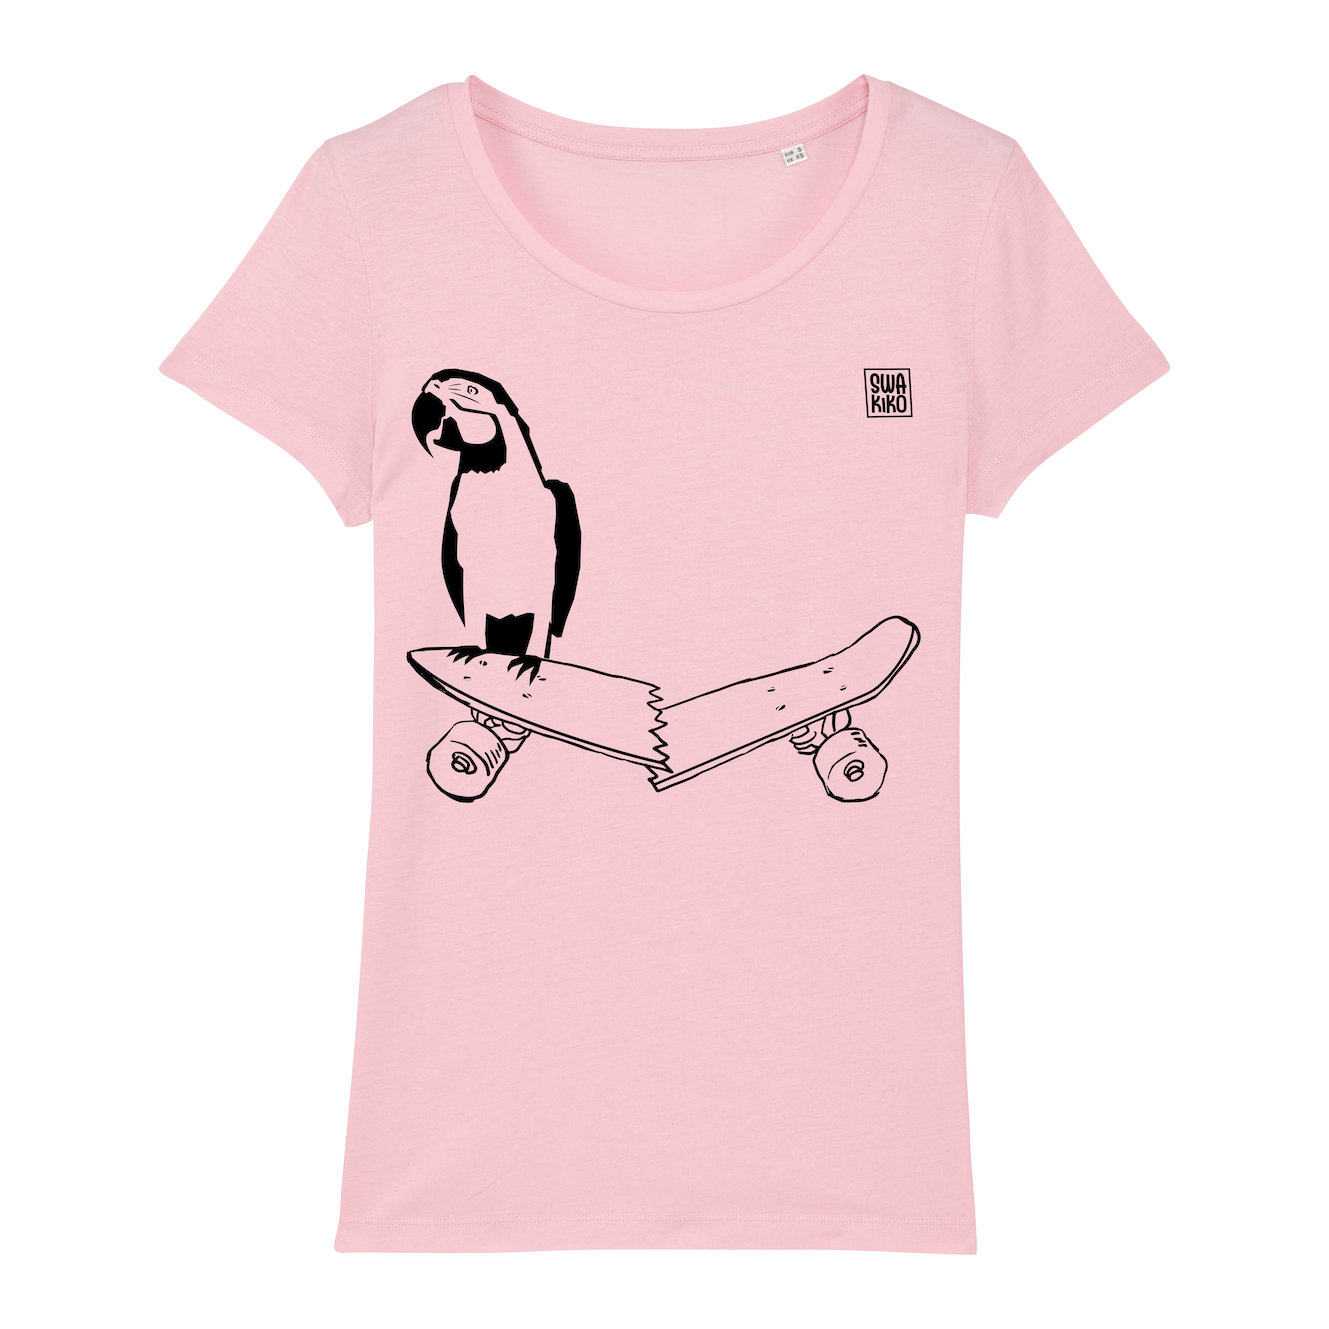 Skate T-shirt women, parrot and skateboard pink